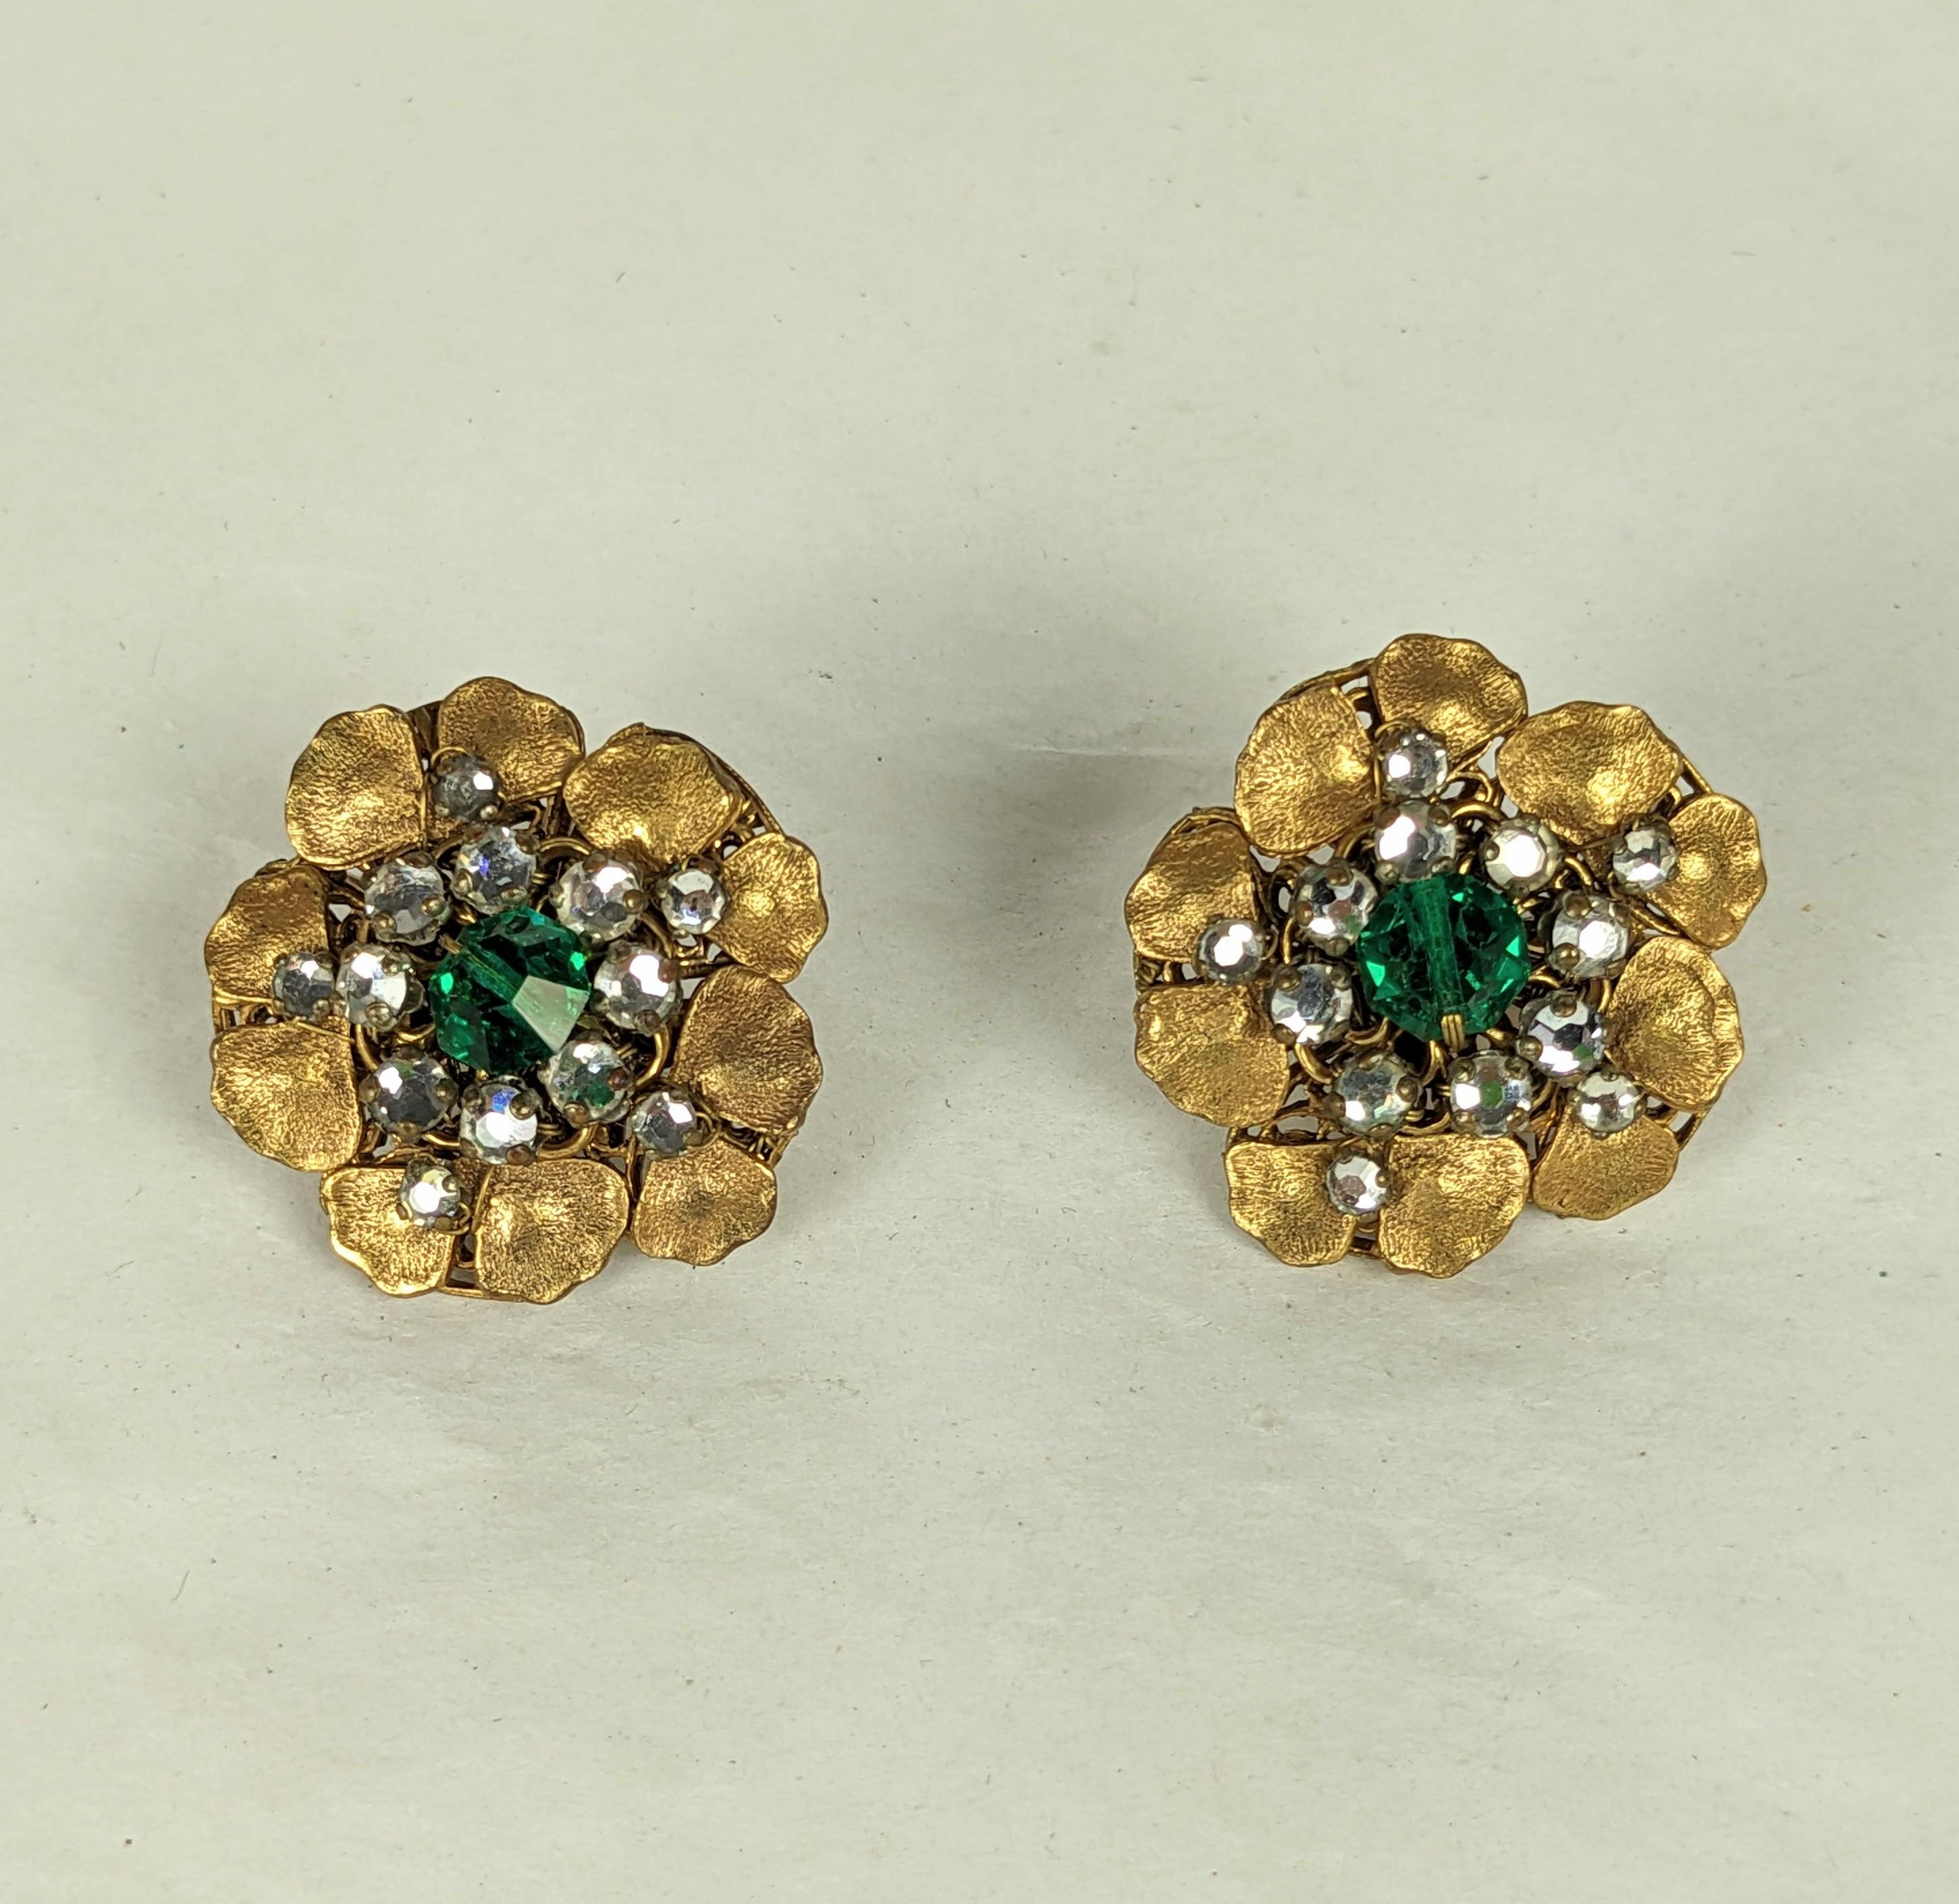 Hübsche Miriam Haskell Crystal Flower Earrings aus den 1930er Jahren mit einer facettierten Smaragdperle. Handgenähte Rosenmontees sind auf russische vergoldete Metallblumenmotive aufgenäht. Frühe Hufeisenmarke. 1